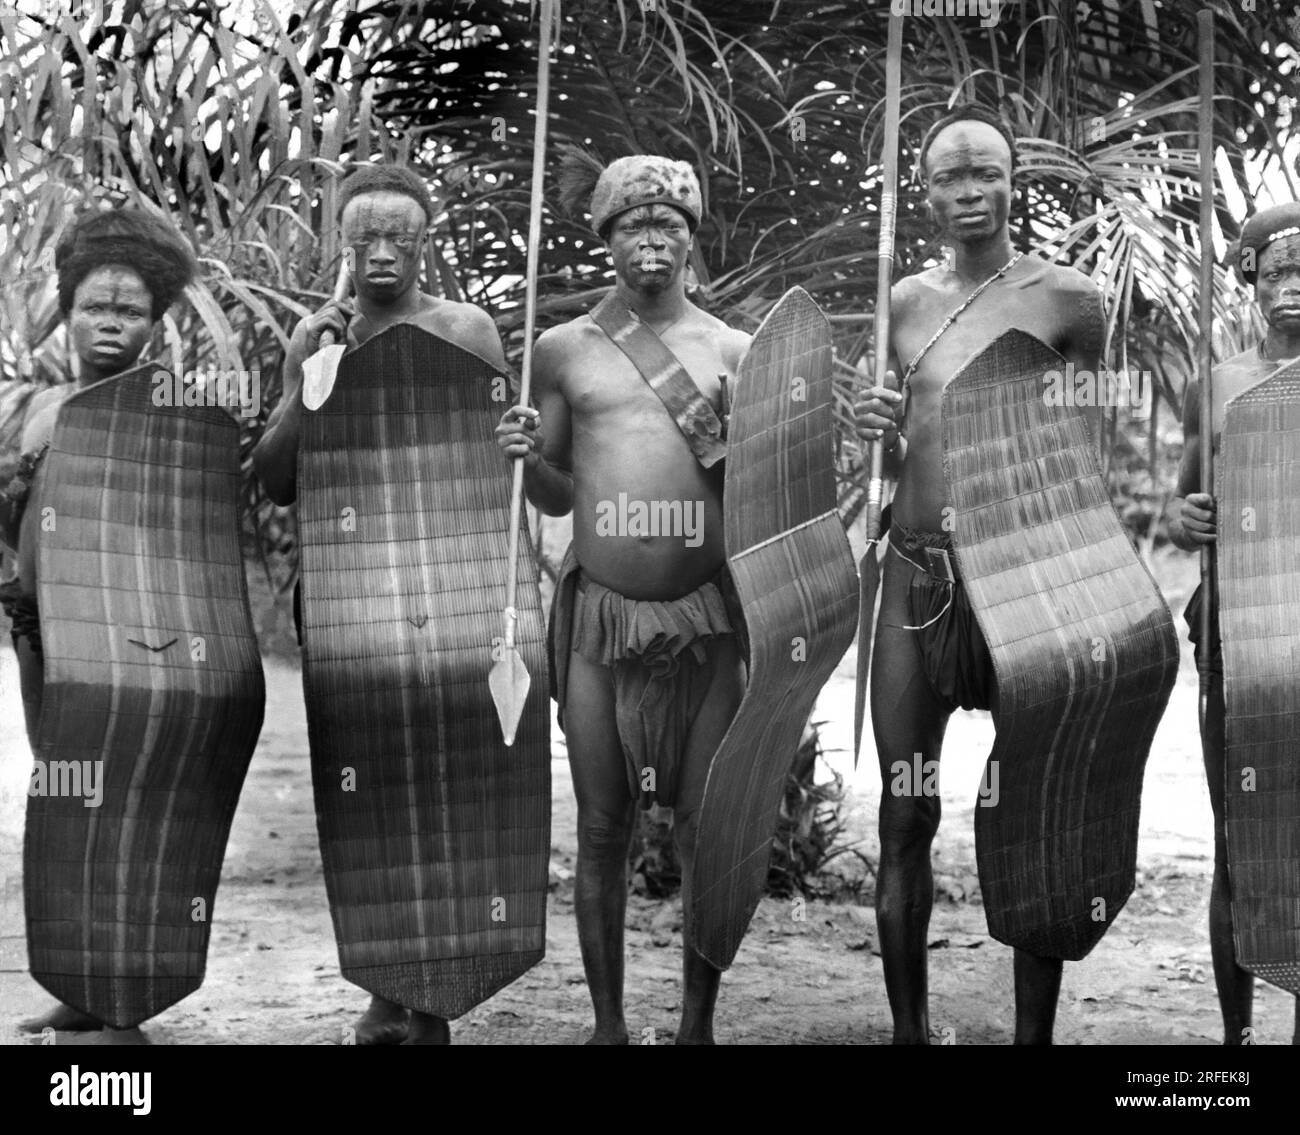 Un groupe de guerriers en armes, au Cameroun. Photographie debut XXeme siecle. Stock Photo